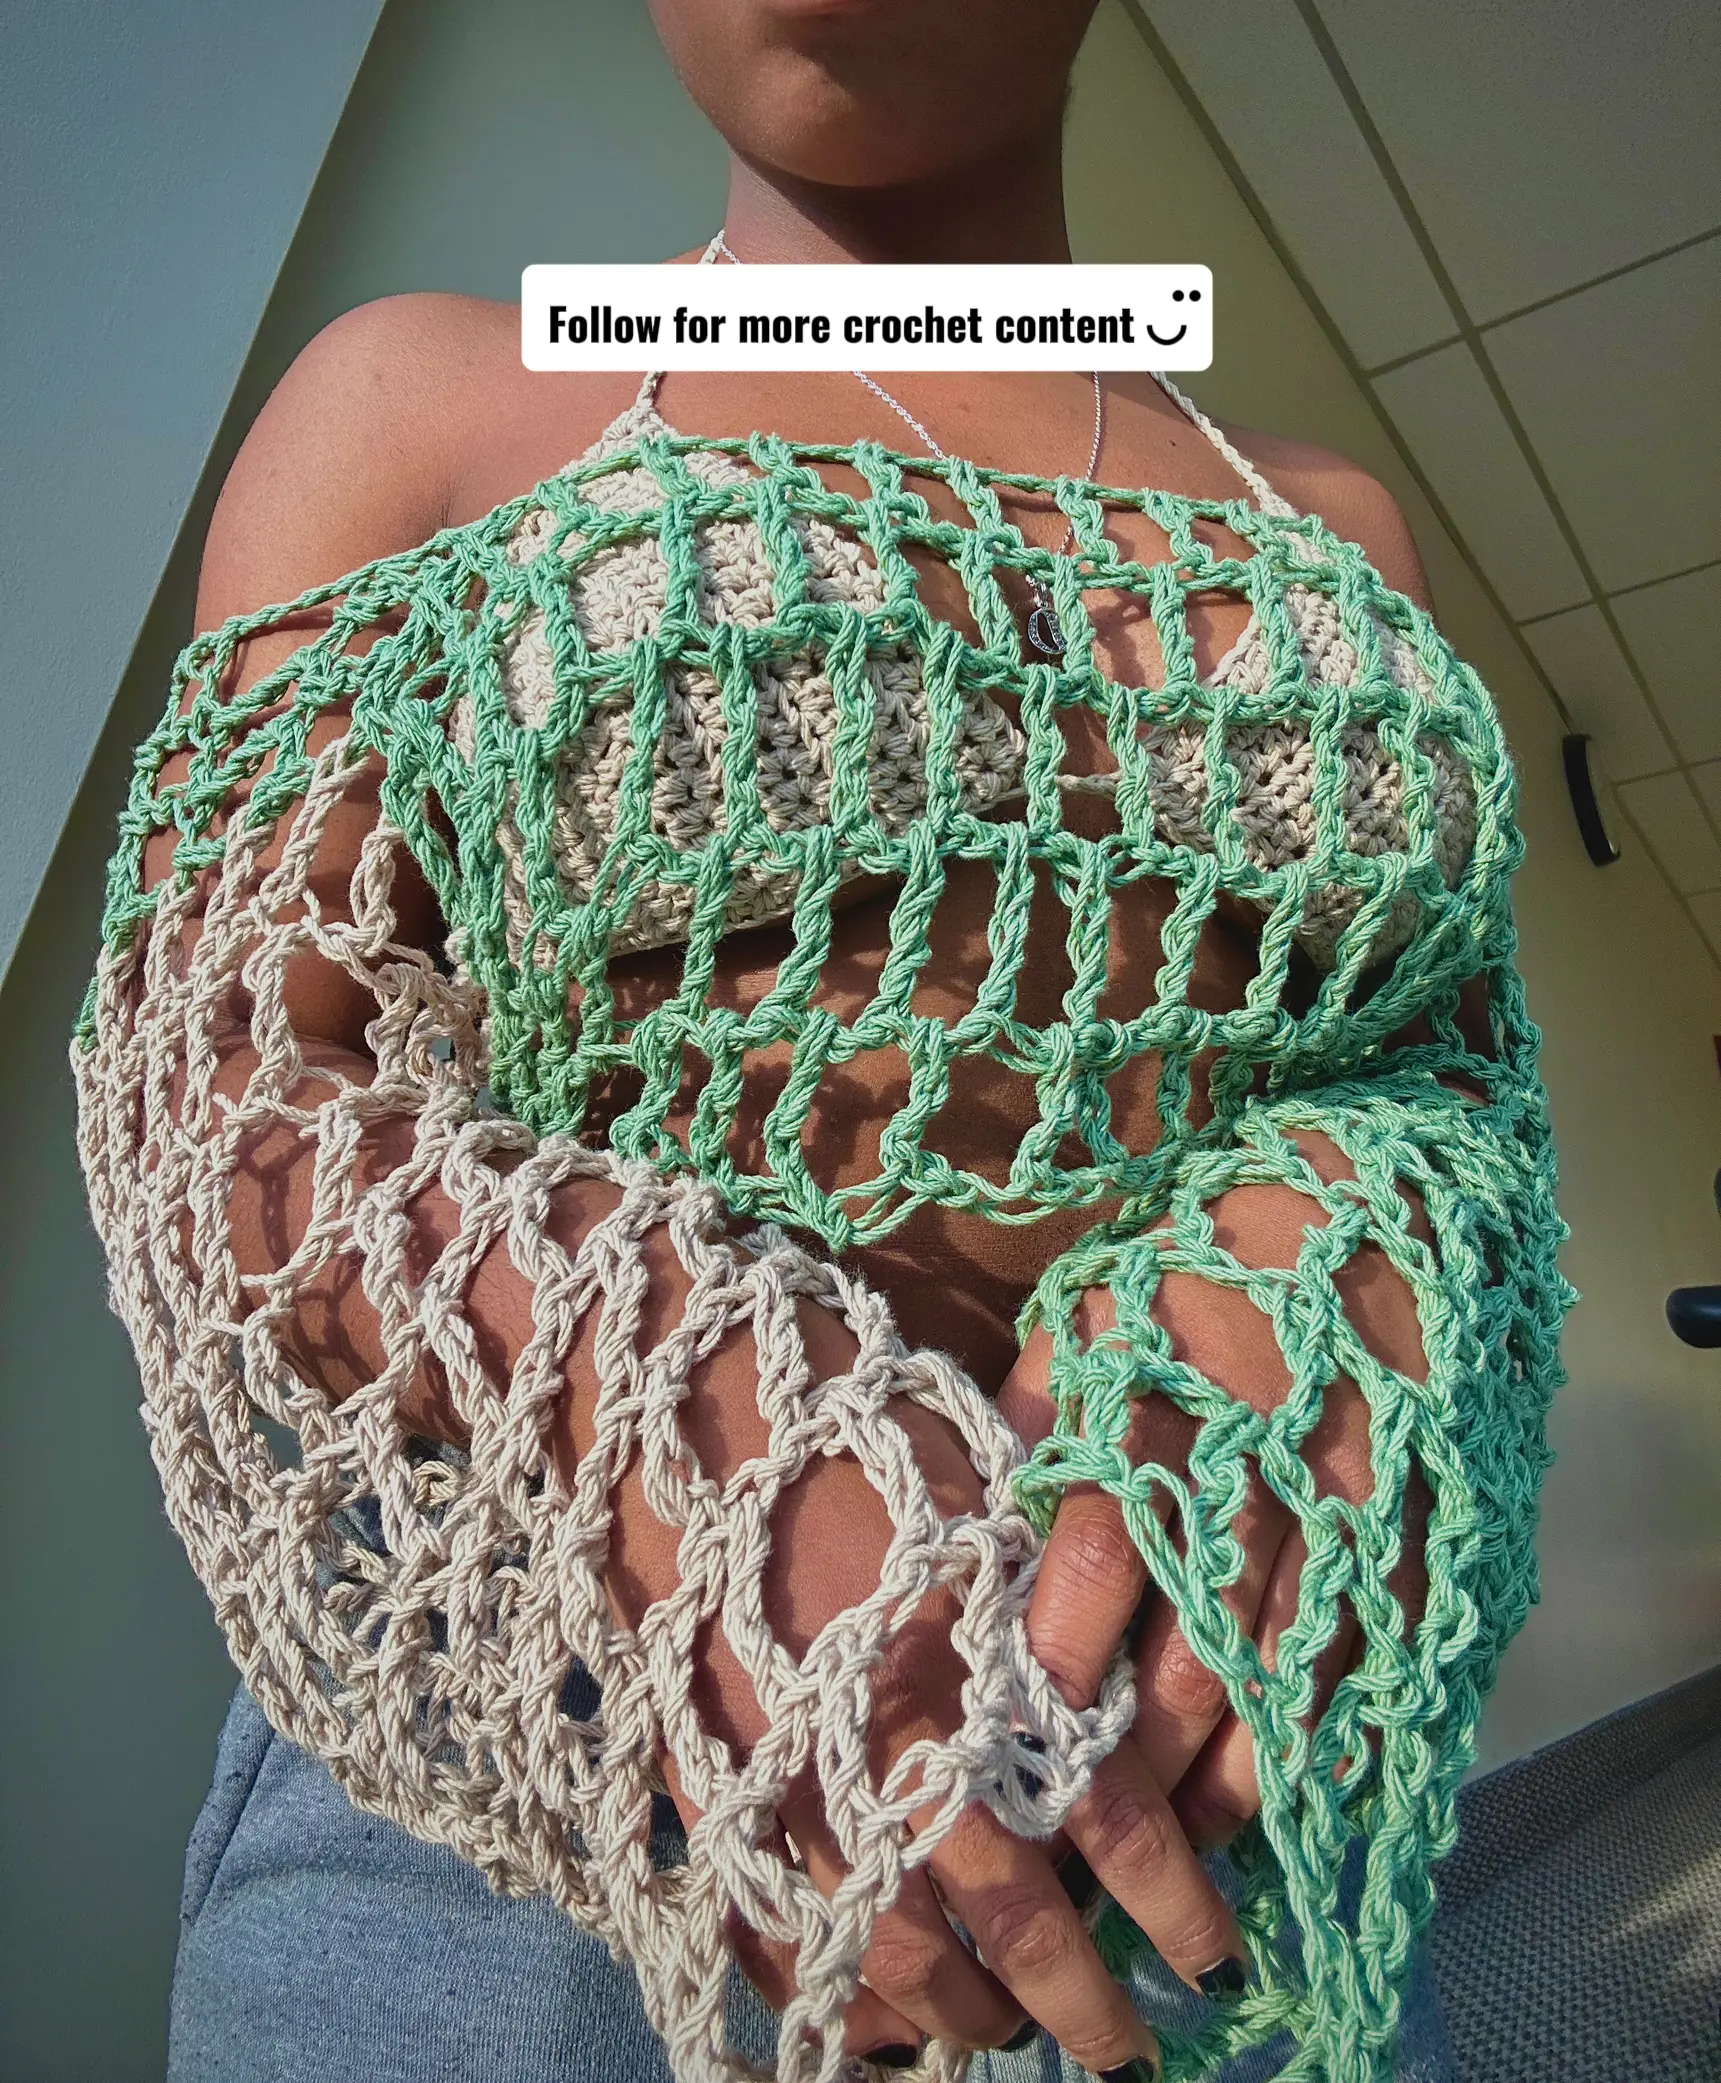 How to Crochet a Bralette: The Feel The Love Bralette Free Pattern -  Carroway Crochet